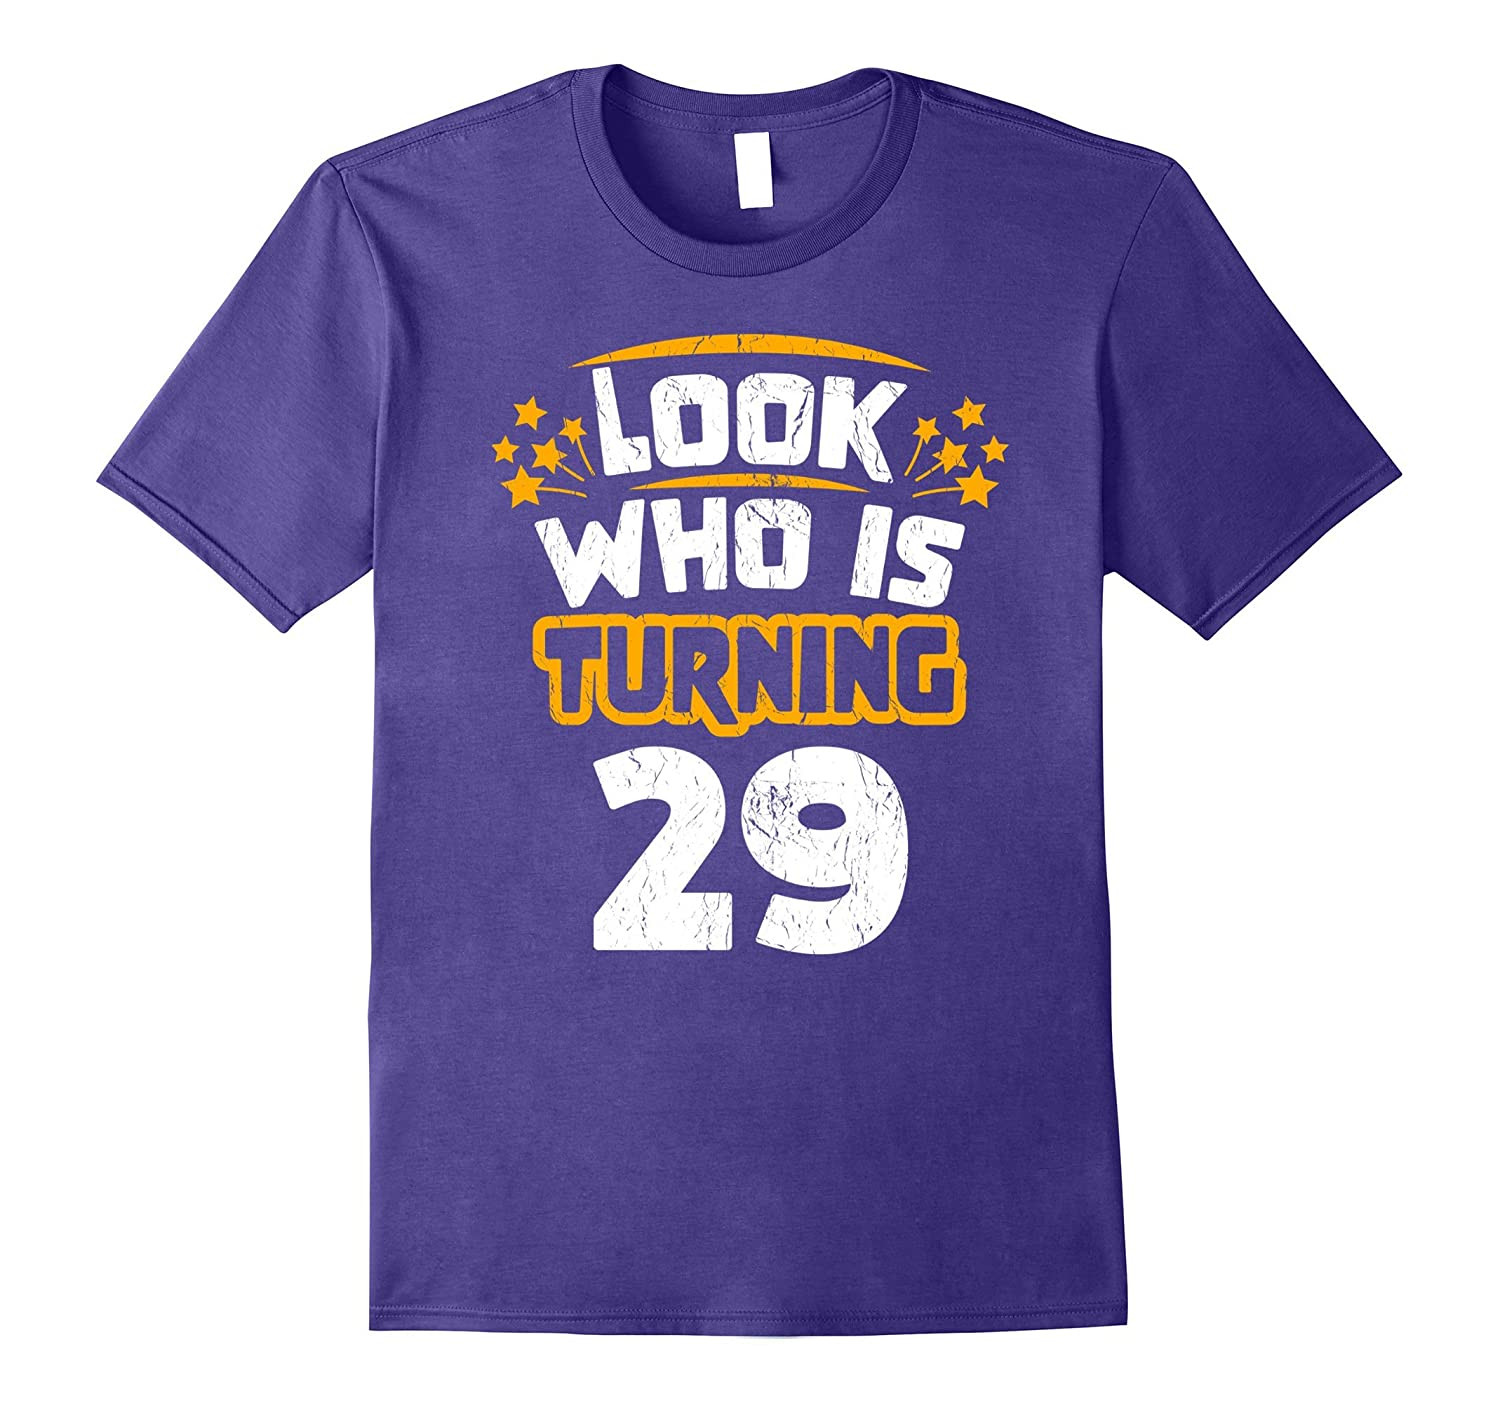 29Th Birthday Gift Ideas
 29th Birthday Gift Idea for Someone Turning 29 T Shirt PL